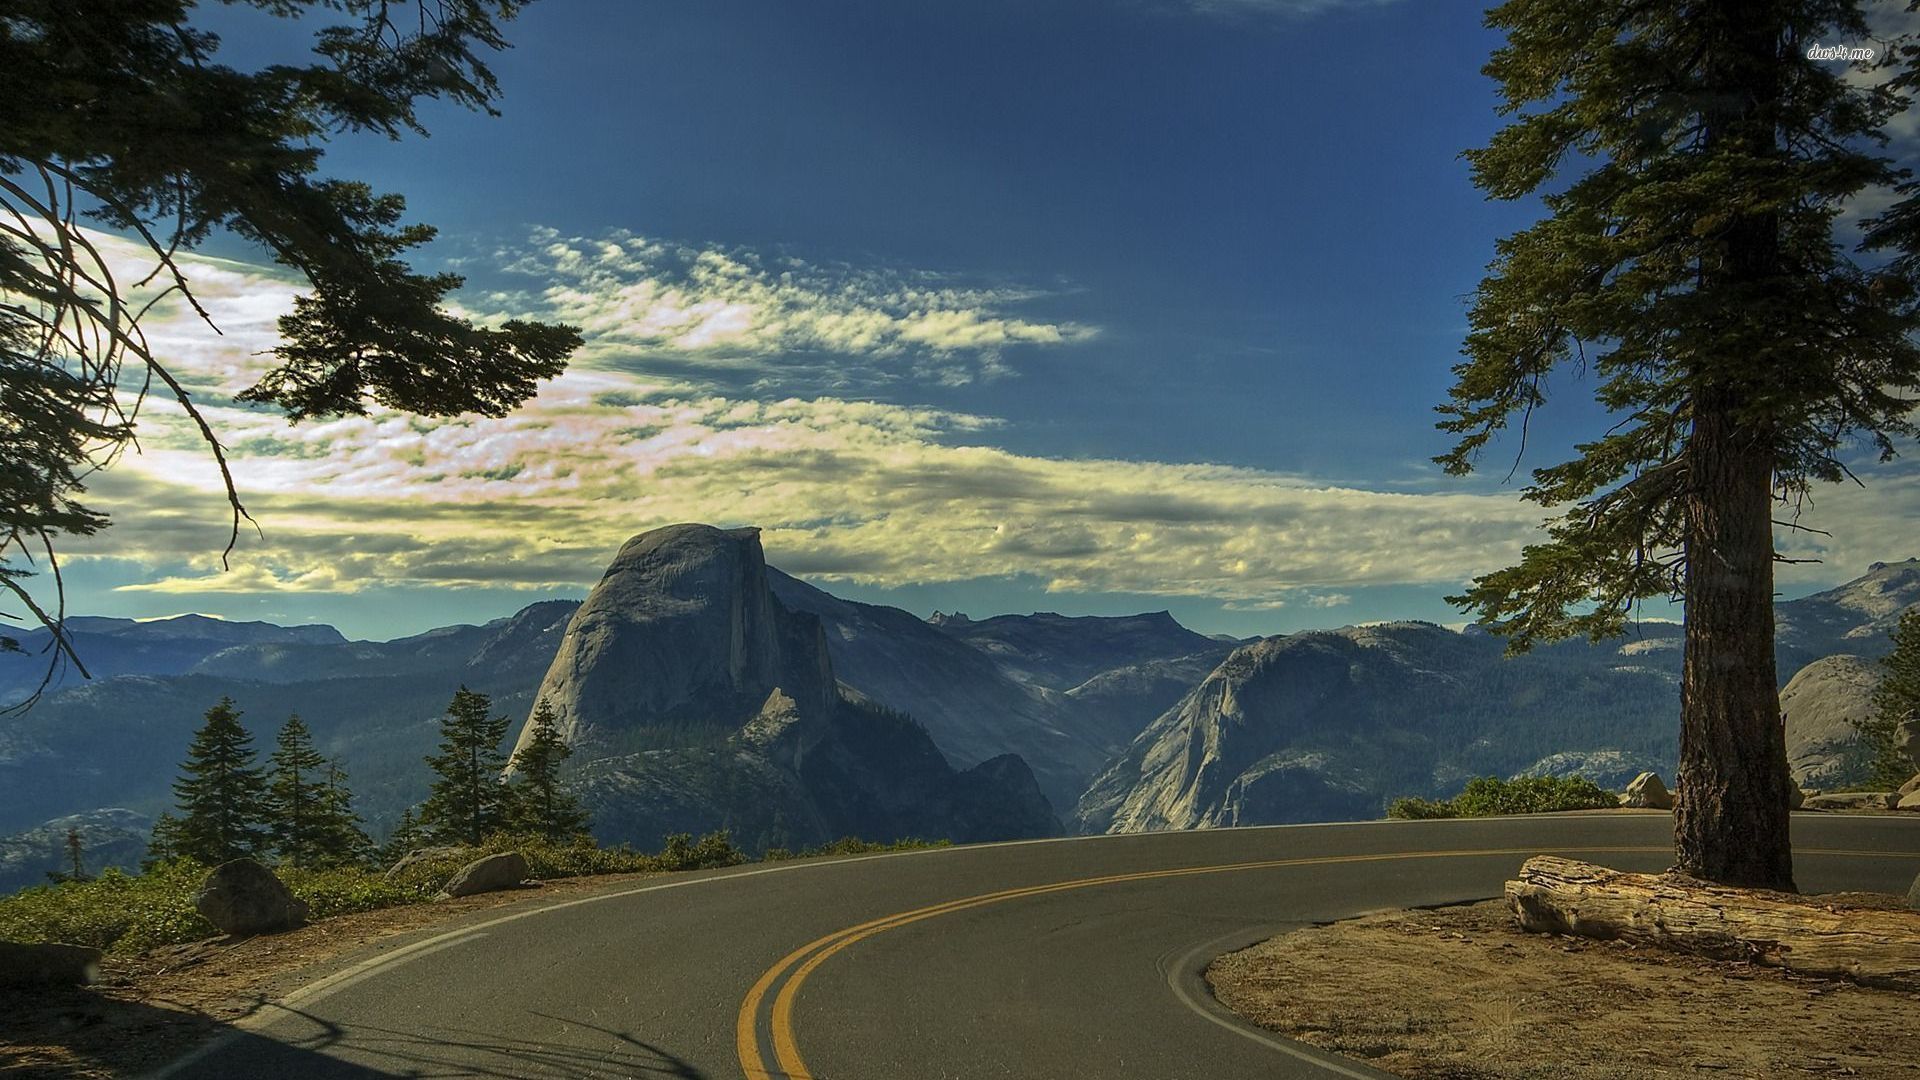 Road through Yosemite National Park wallpaper - Nature wallpapers ...